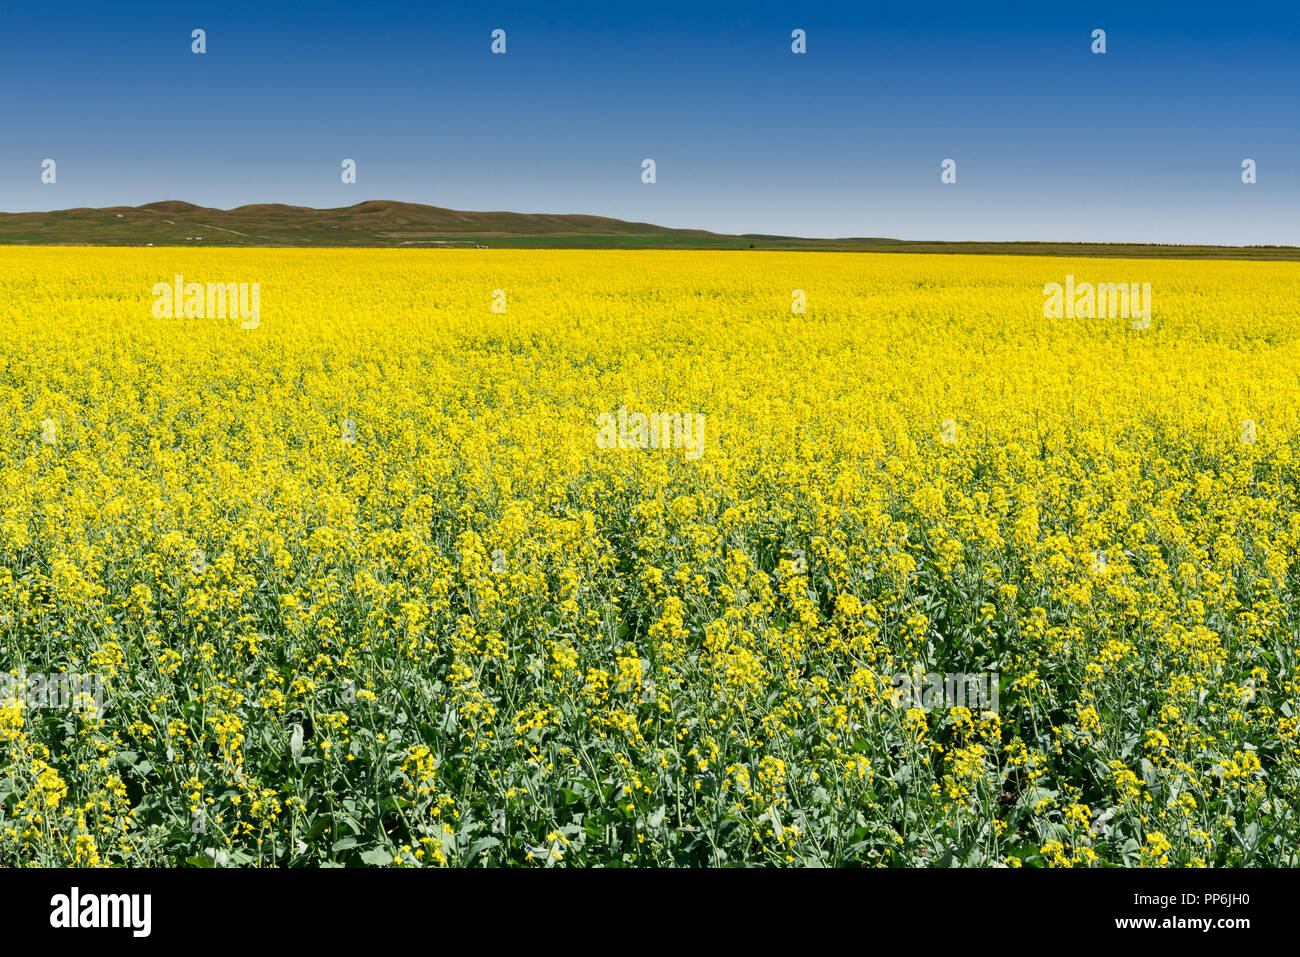 Die schöne Landschaft der landwirtschaftlichen Nutzfläche in den Ausläufern von Alberta, Kanada, mit gelben Felder von Raps Getreide Stockfoto